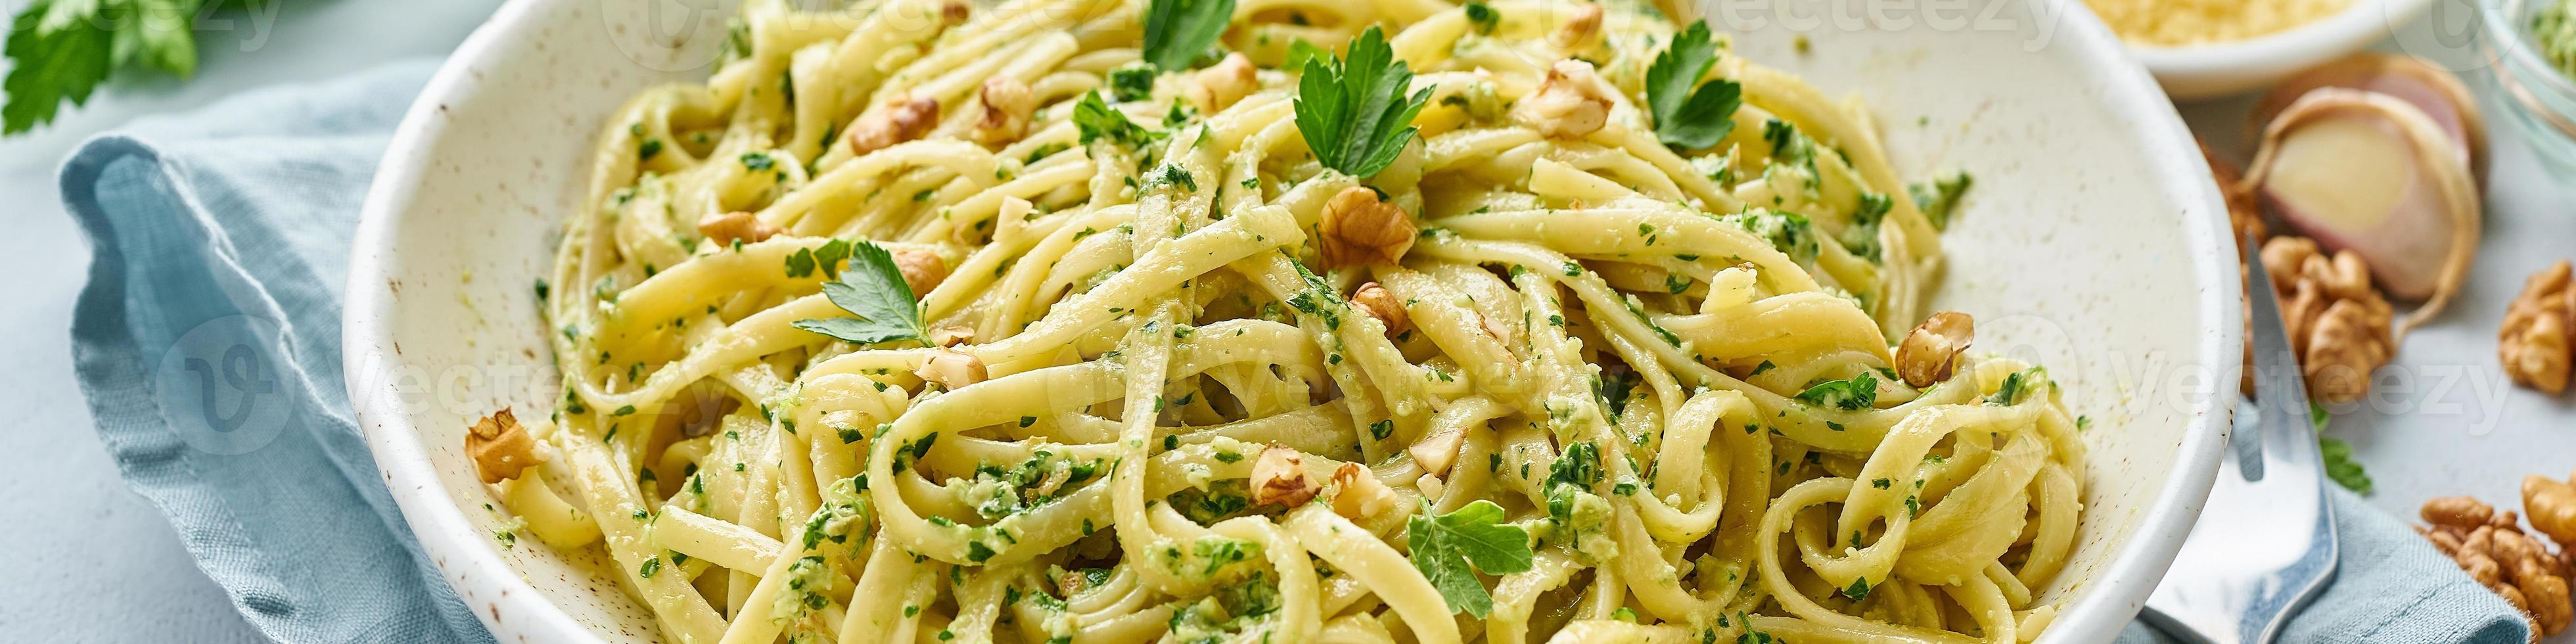 banderoll med pesto pasta, bavette med valnötter, persilja, vitlök, nötter,  olivolja 7462520 Stock Photo